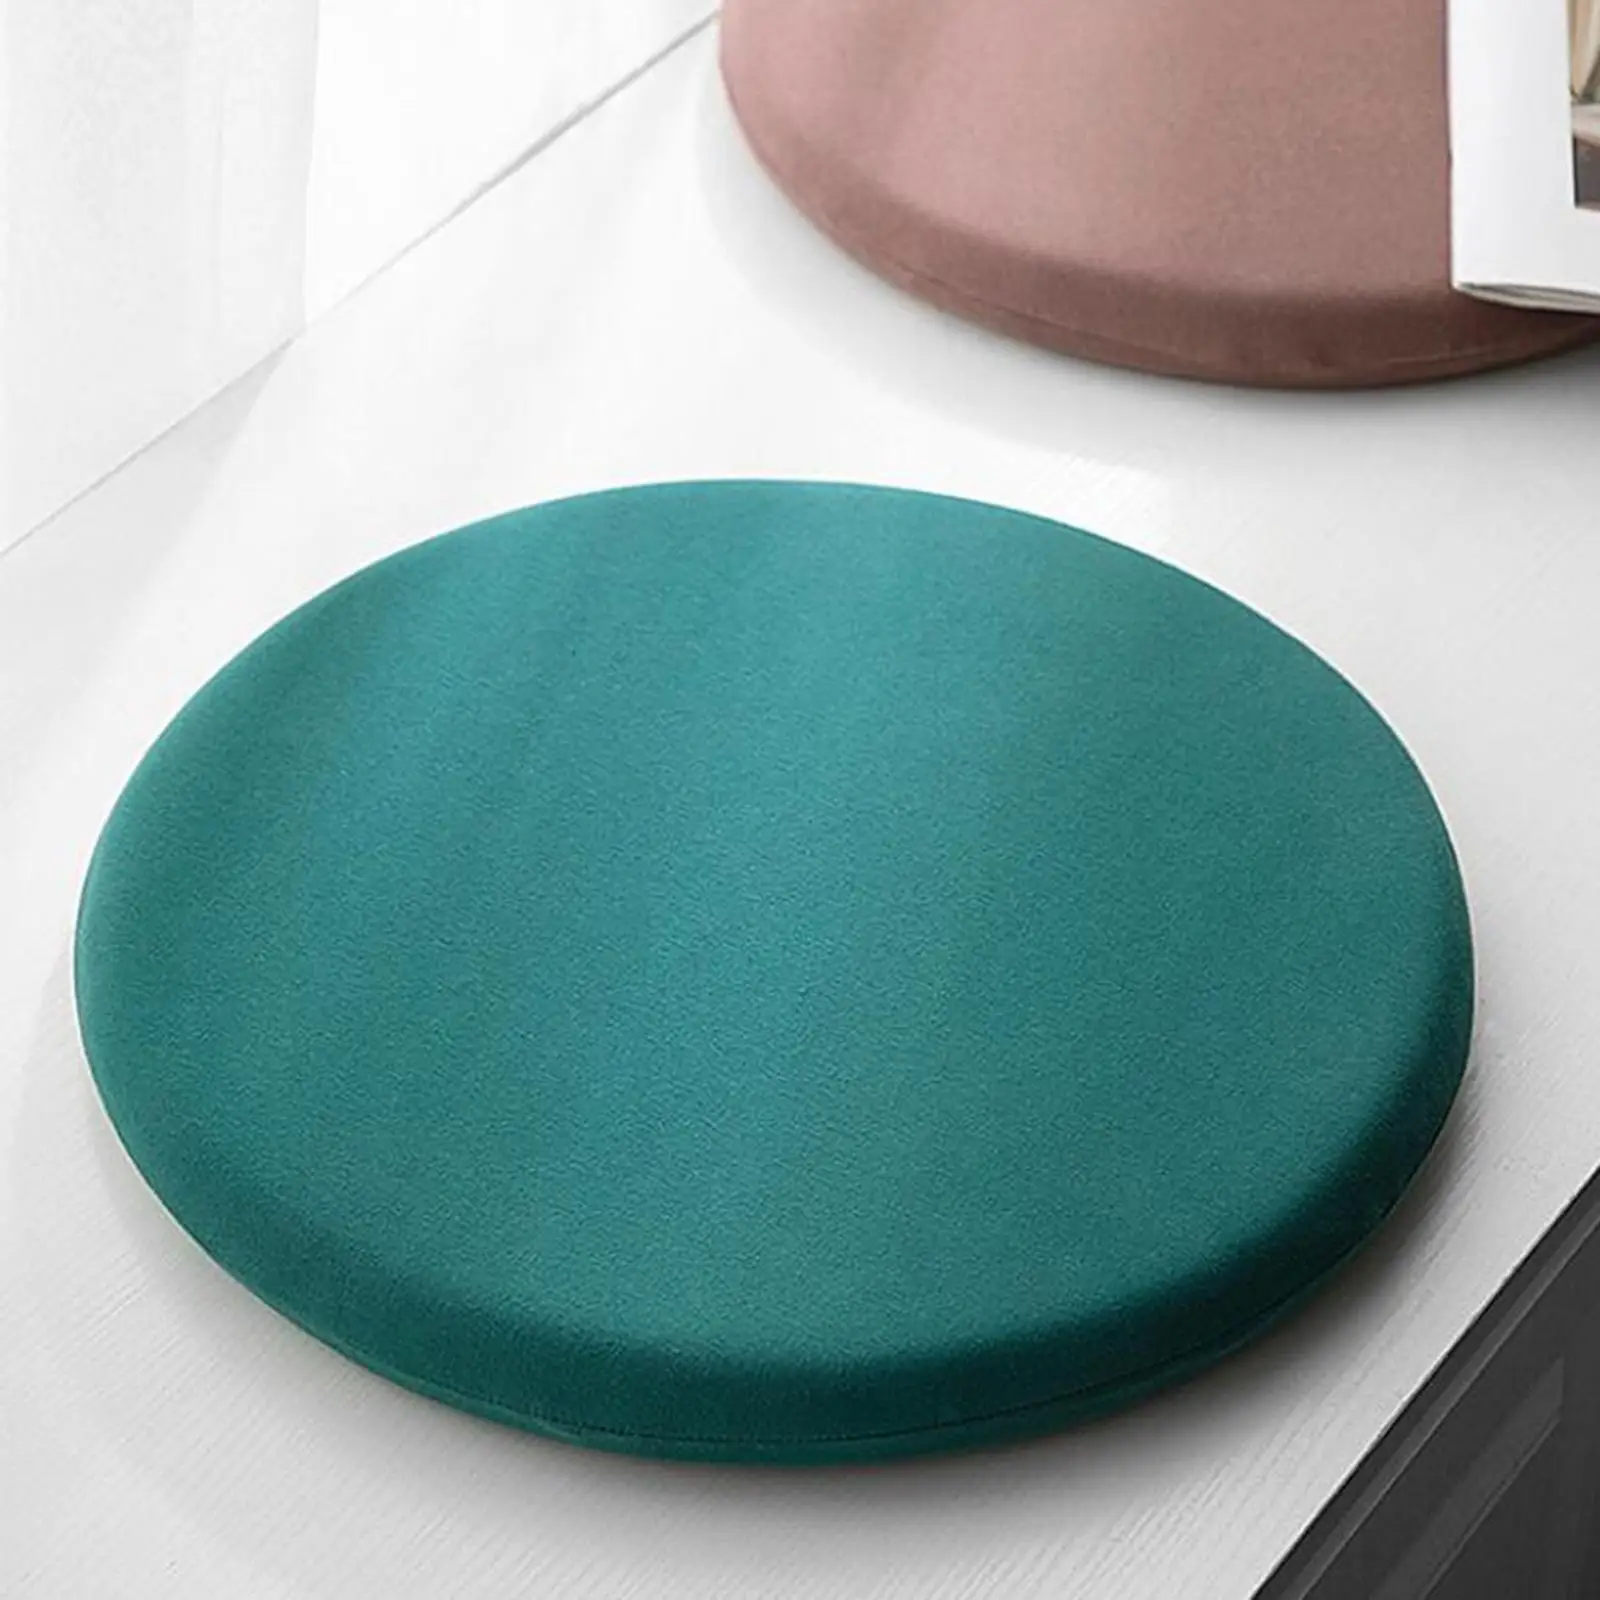 Round Seat Cushion, Memory Foam Floor Mat, Tatami Indoor Pad, Seat Decoration